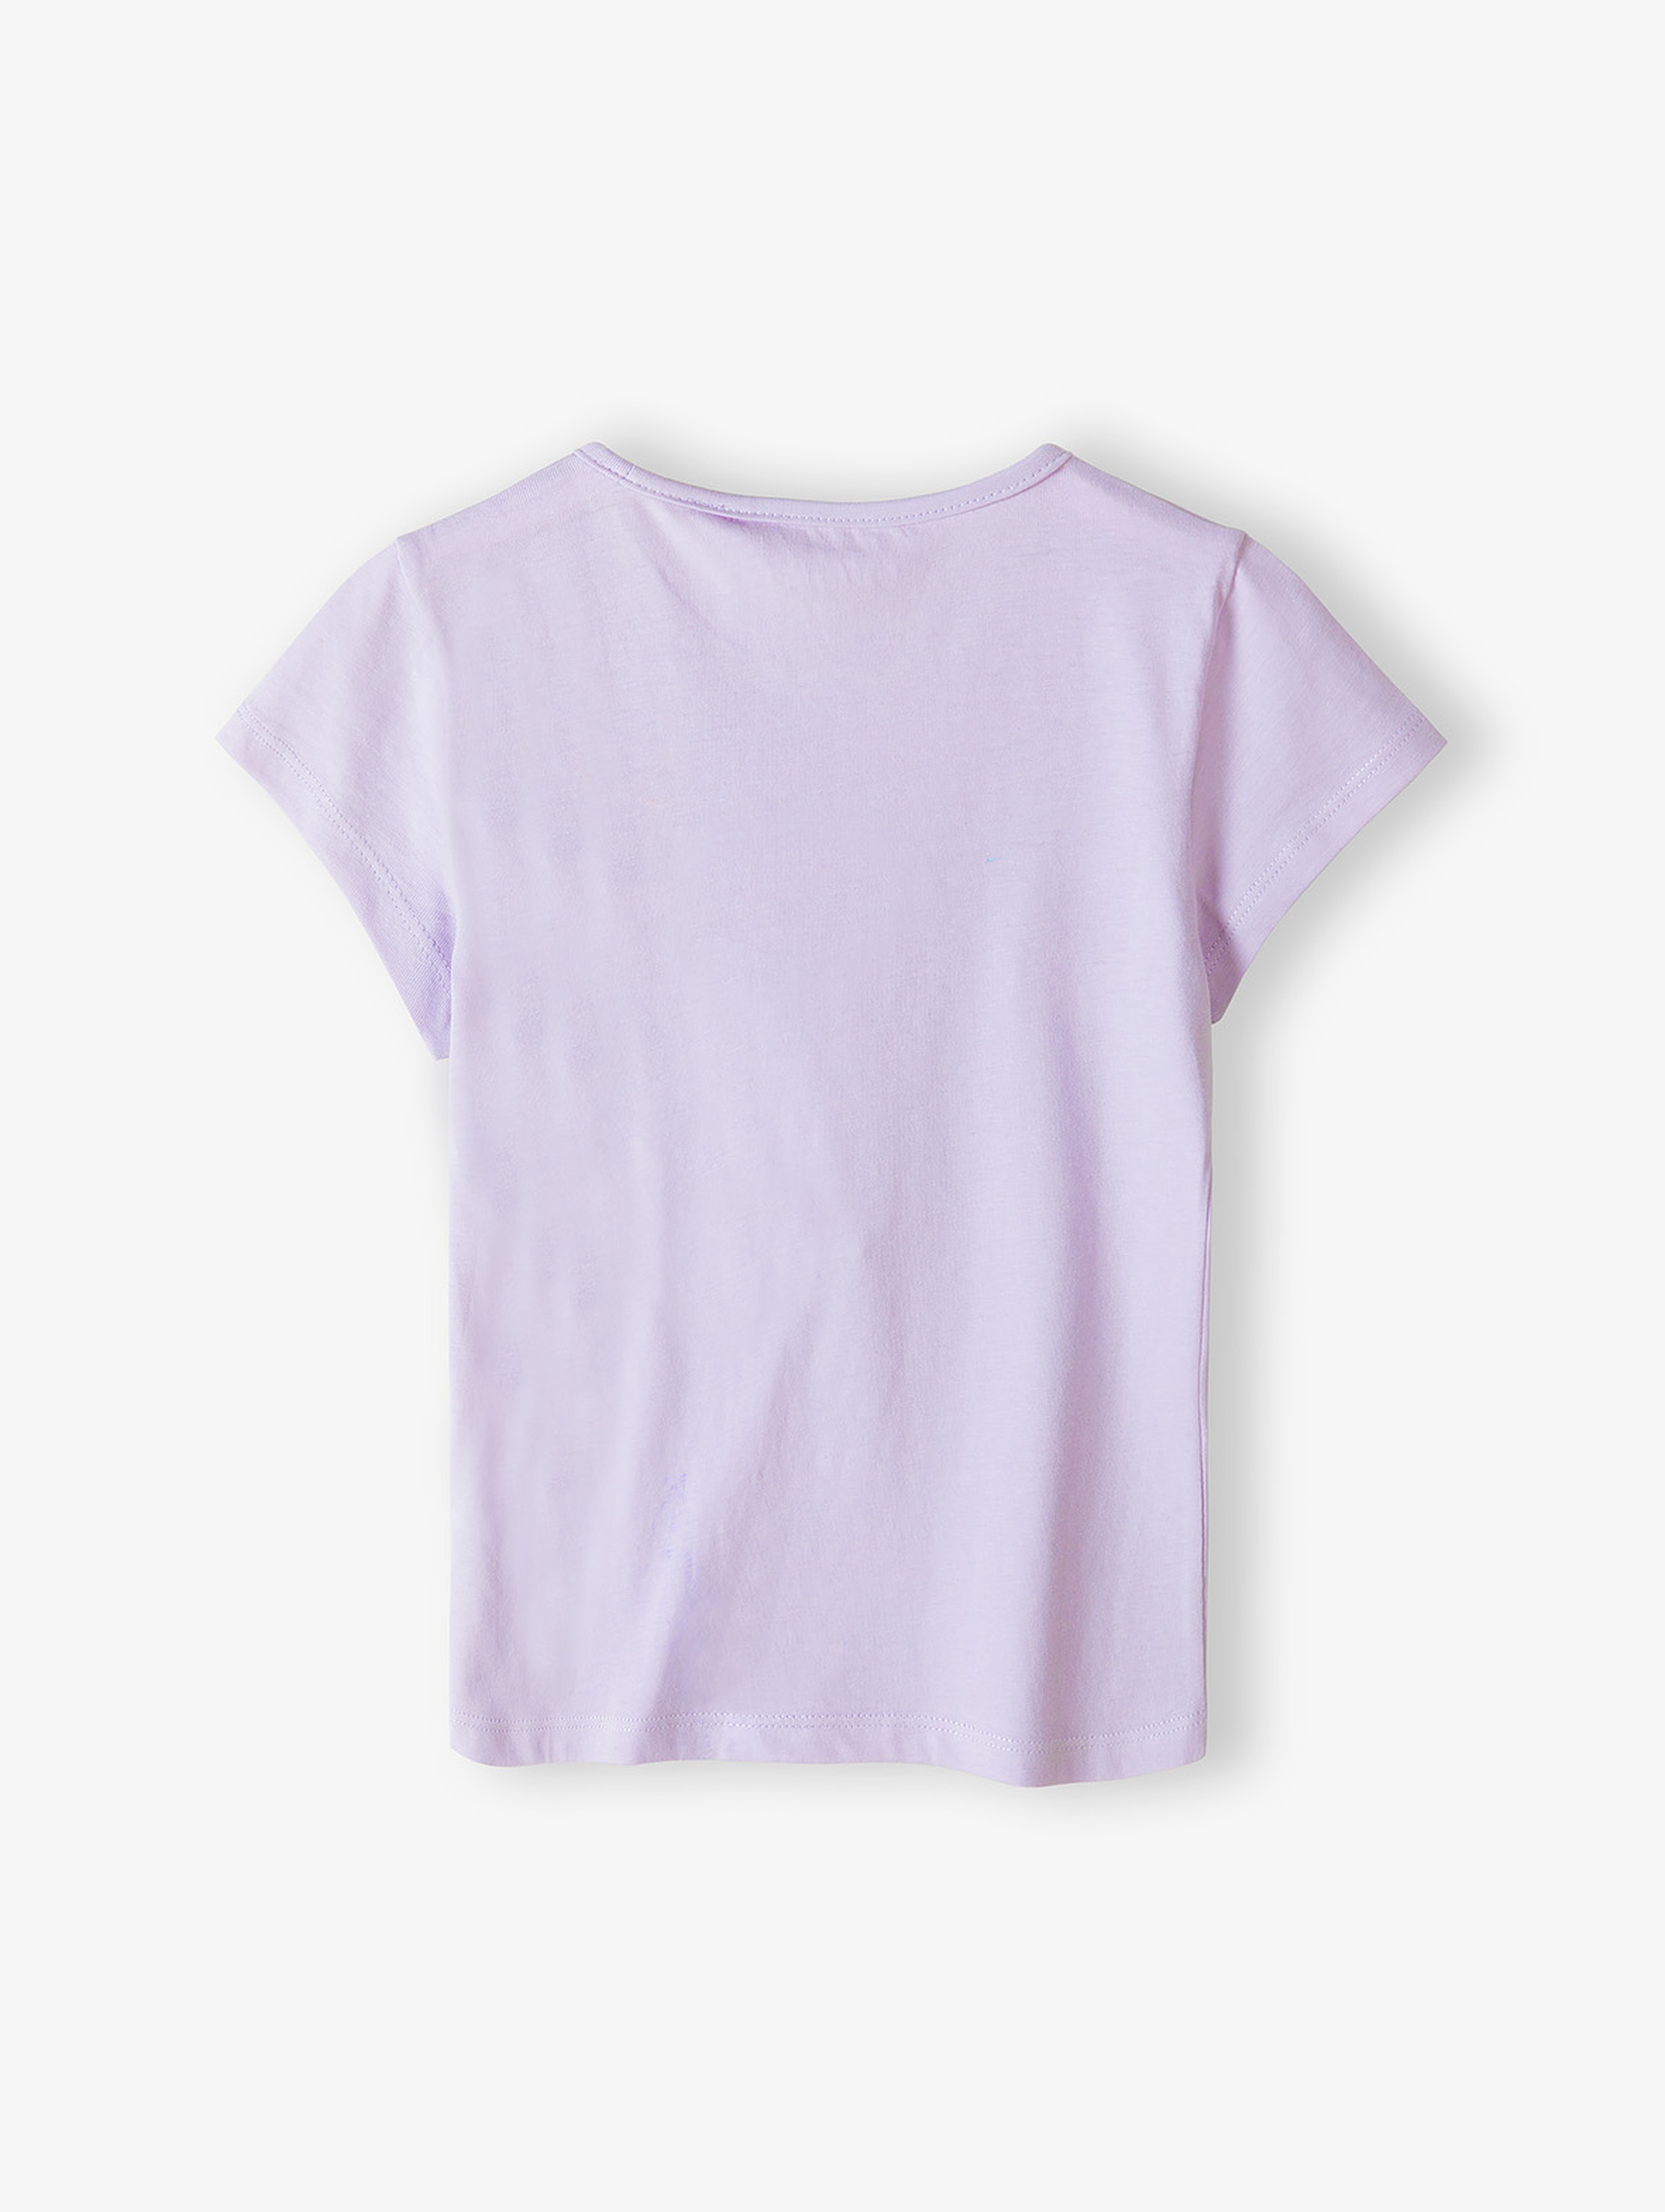 Fioletowy dzianinowy t-shirt dla dziewczynki - 5.10.15.